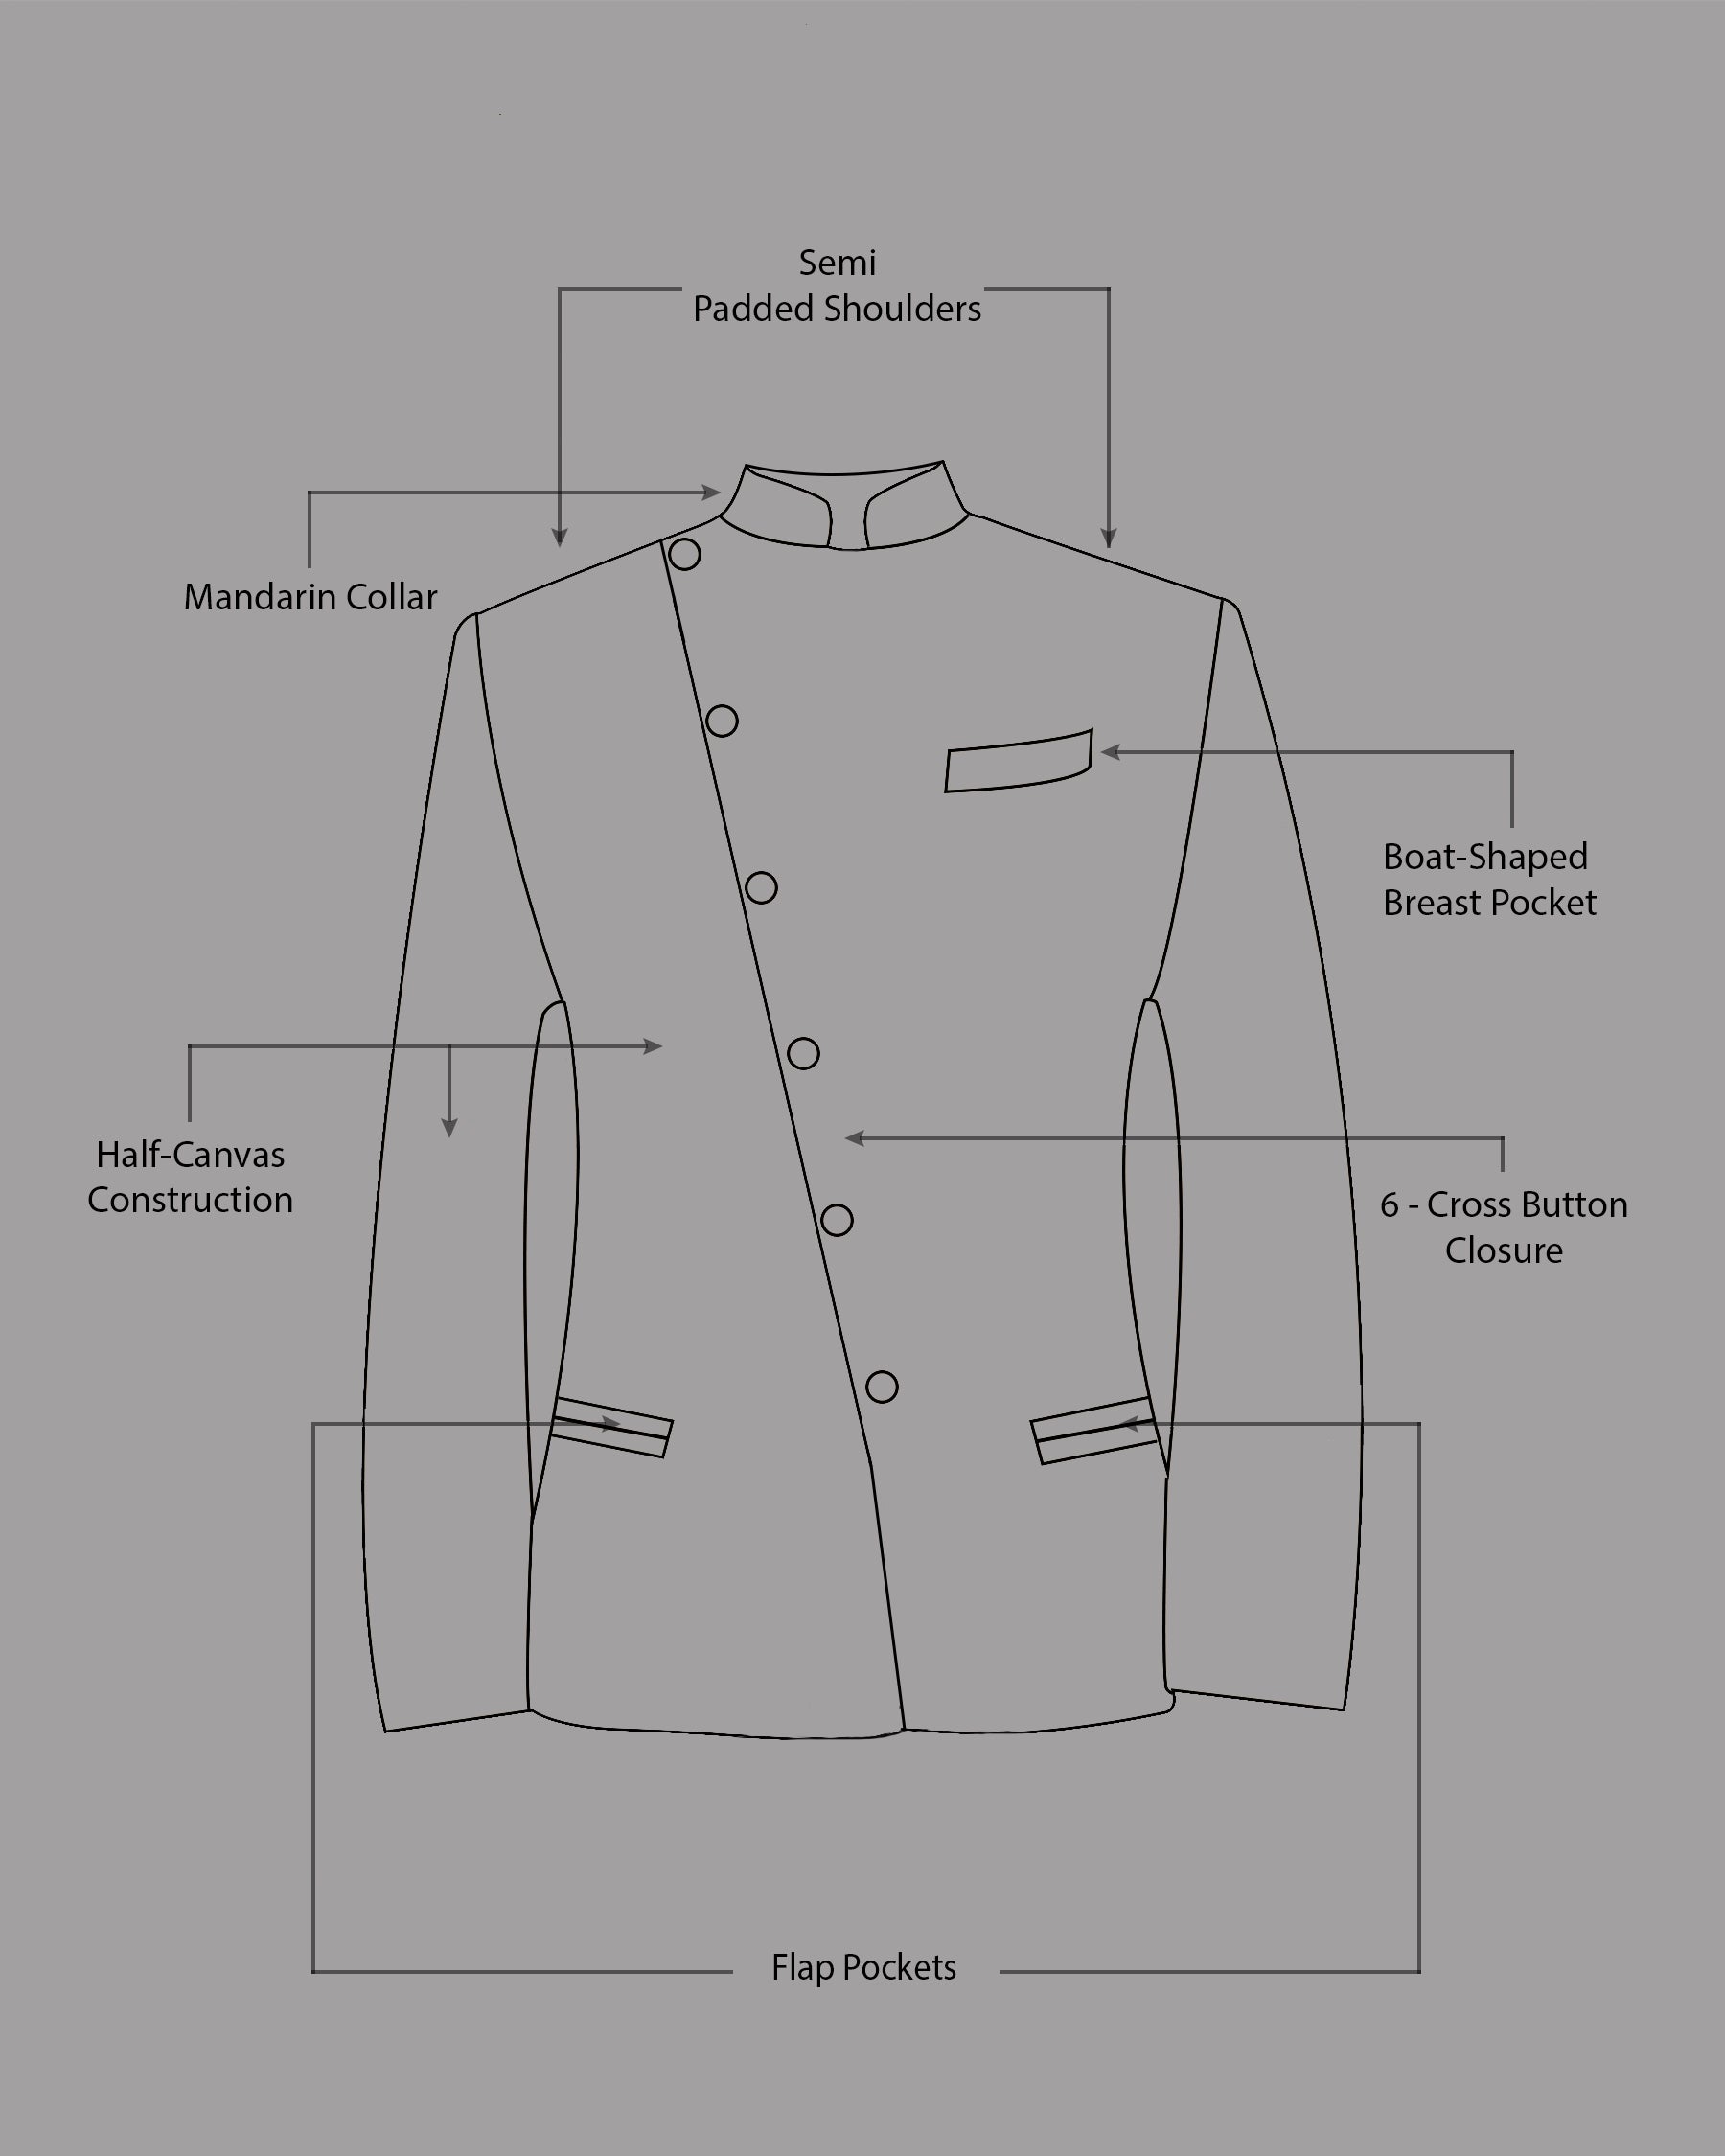 Dark Brown Cross Placket Wool Rich Bandhgala Suit